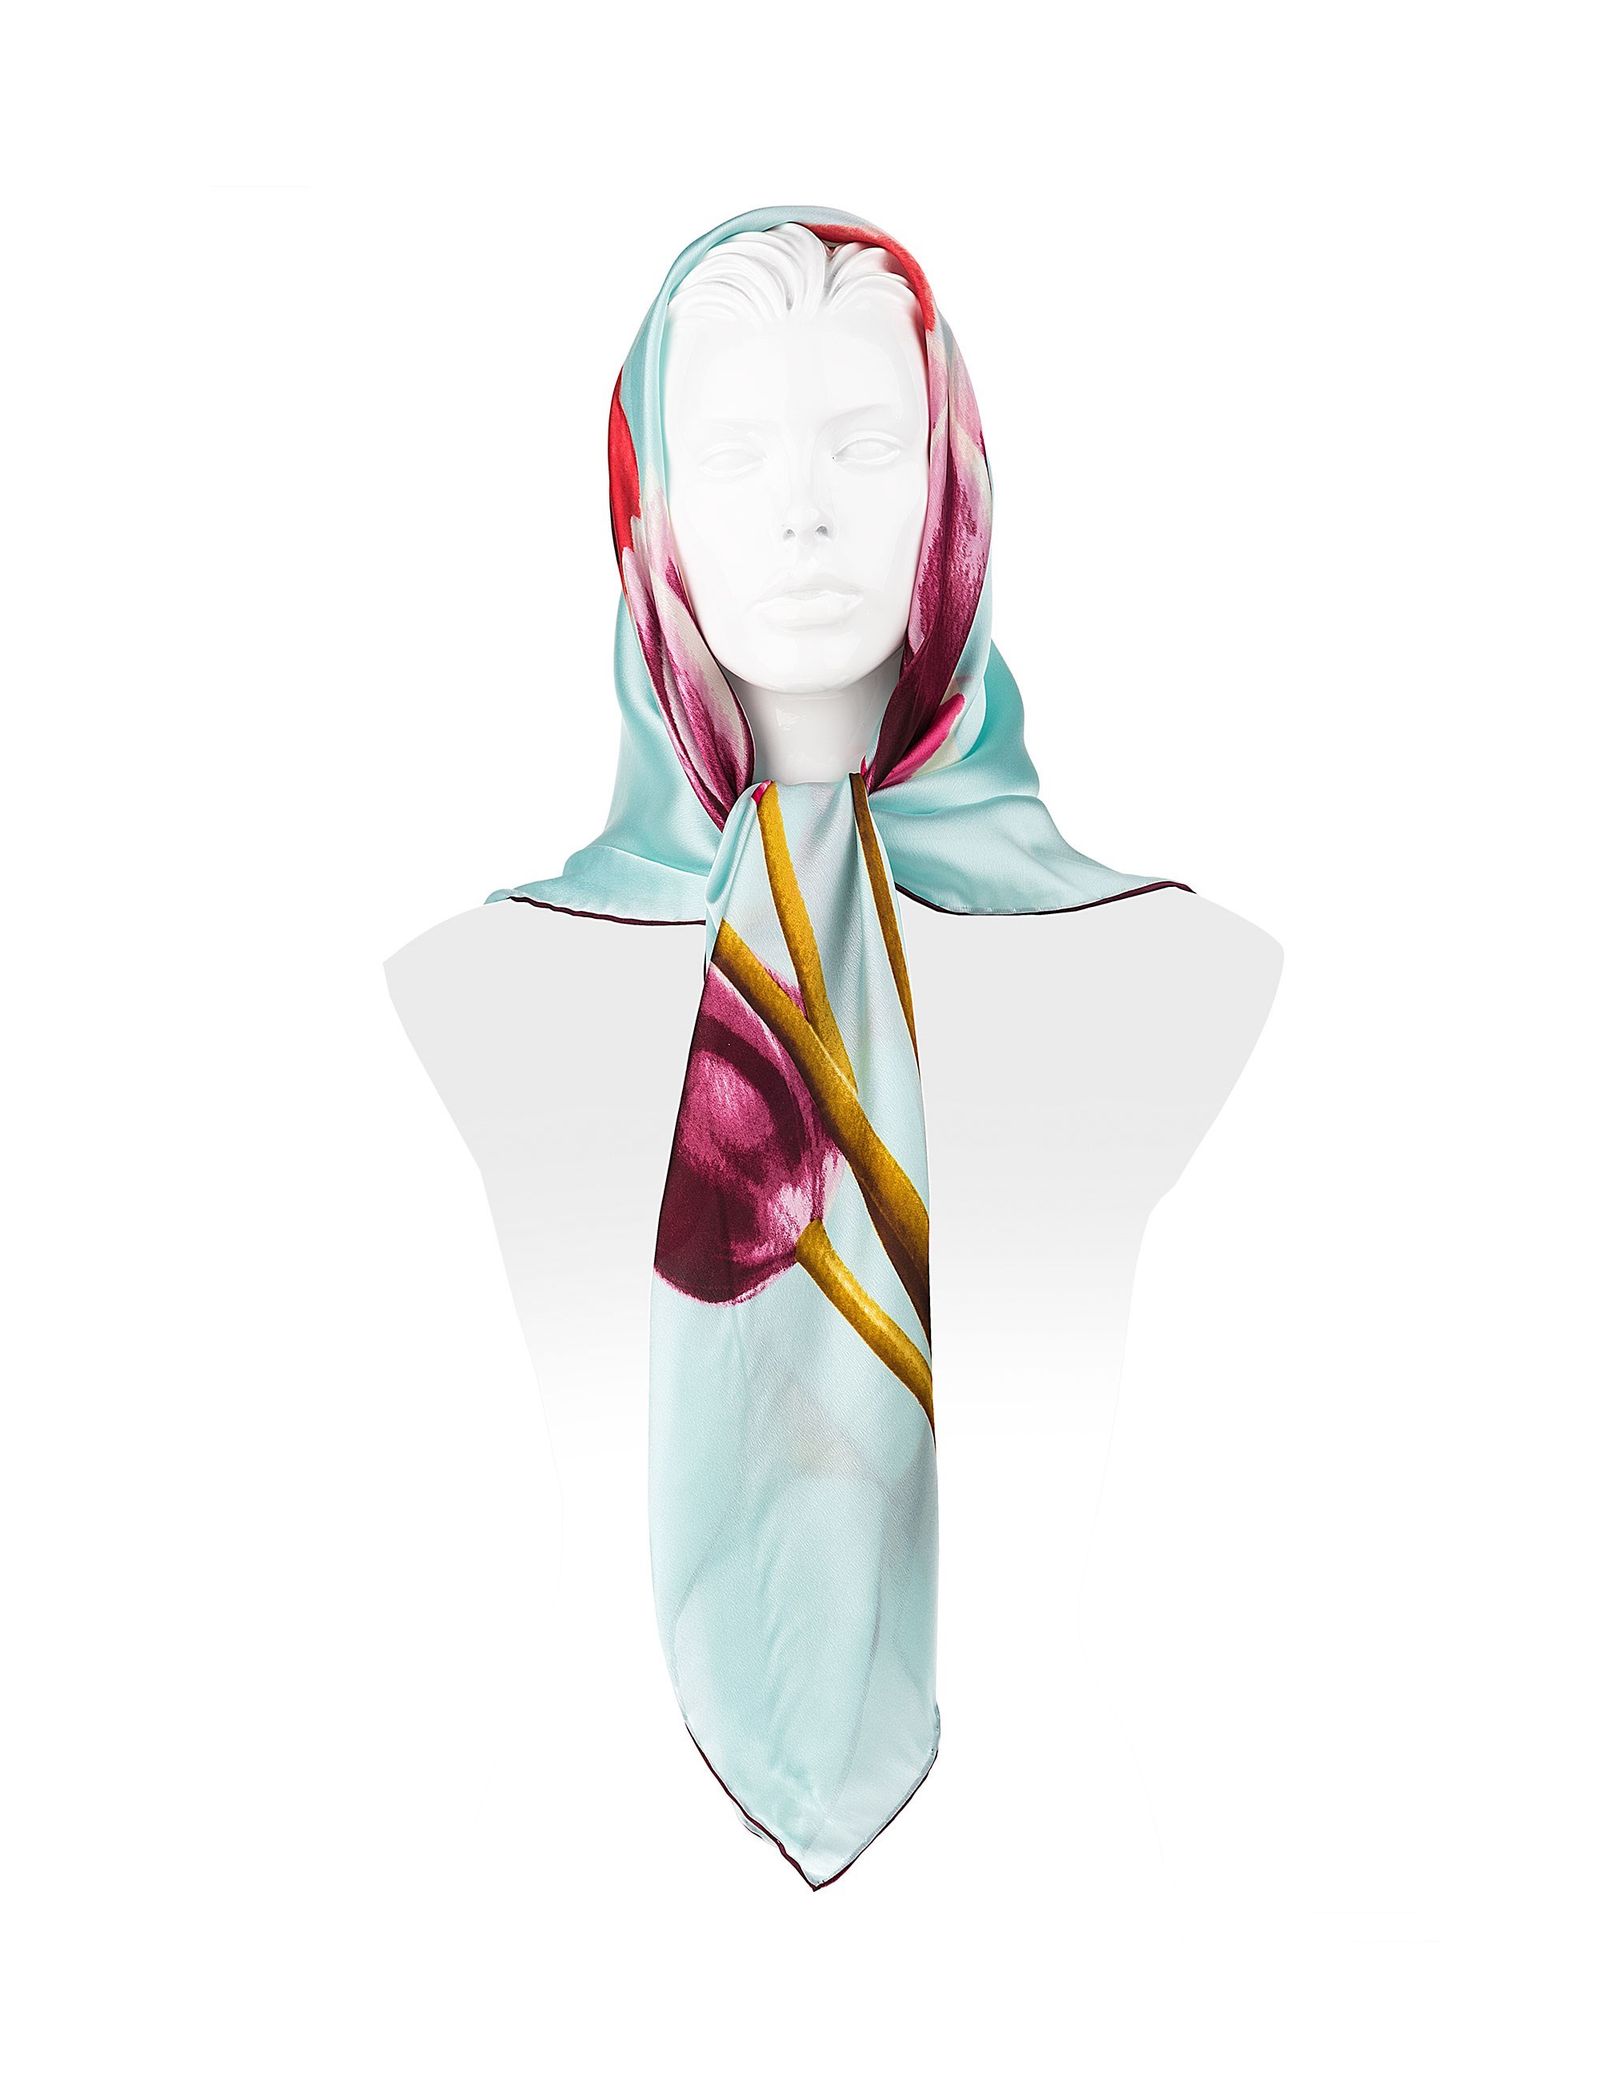 روسری ابریشمی زنانه - رزتی - آبي روشن - 1